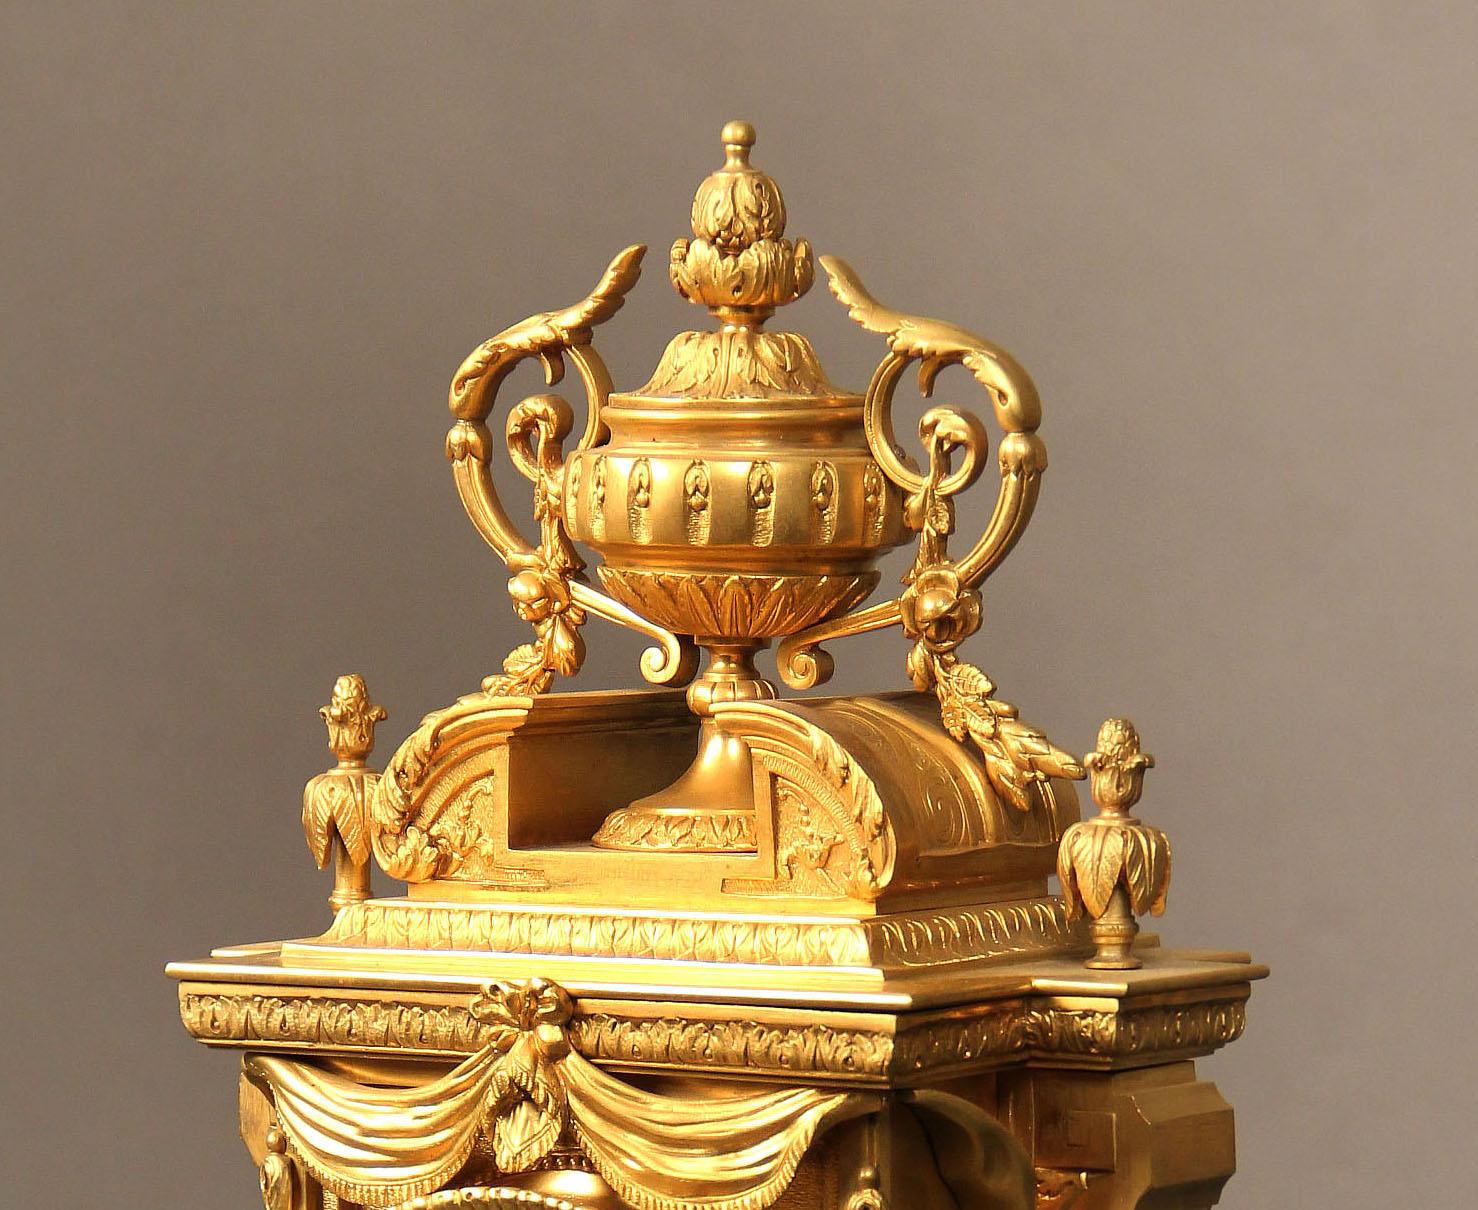 Belle horloge de manteau en bronze doré de la fin du XIXe siècle

Une urne de belle qualité, ornée de fleurs et de feuillages, est placée au-dessus du cadran de l'horloge, entourée de draperies suspendues. La base est centrée sur un récif floral et